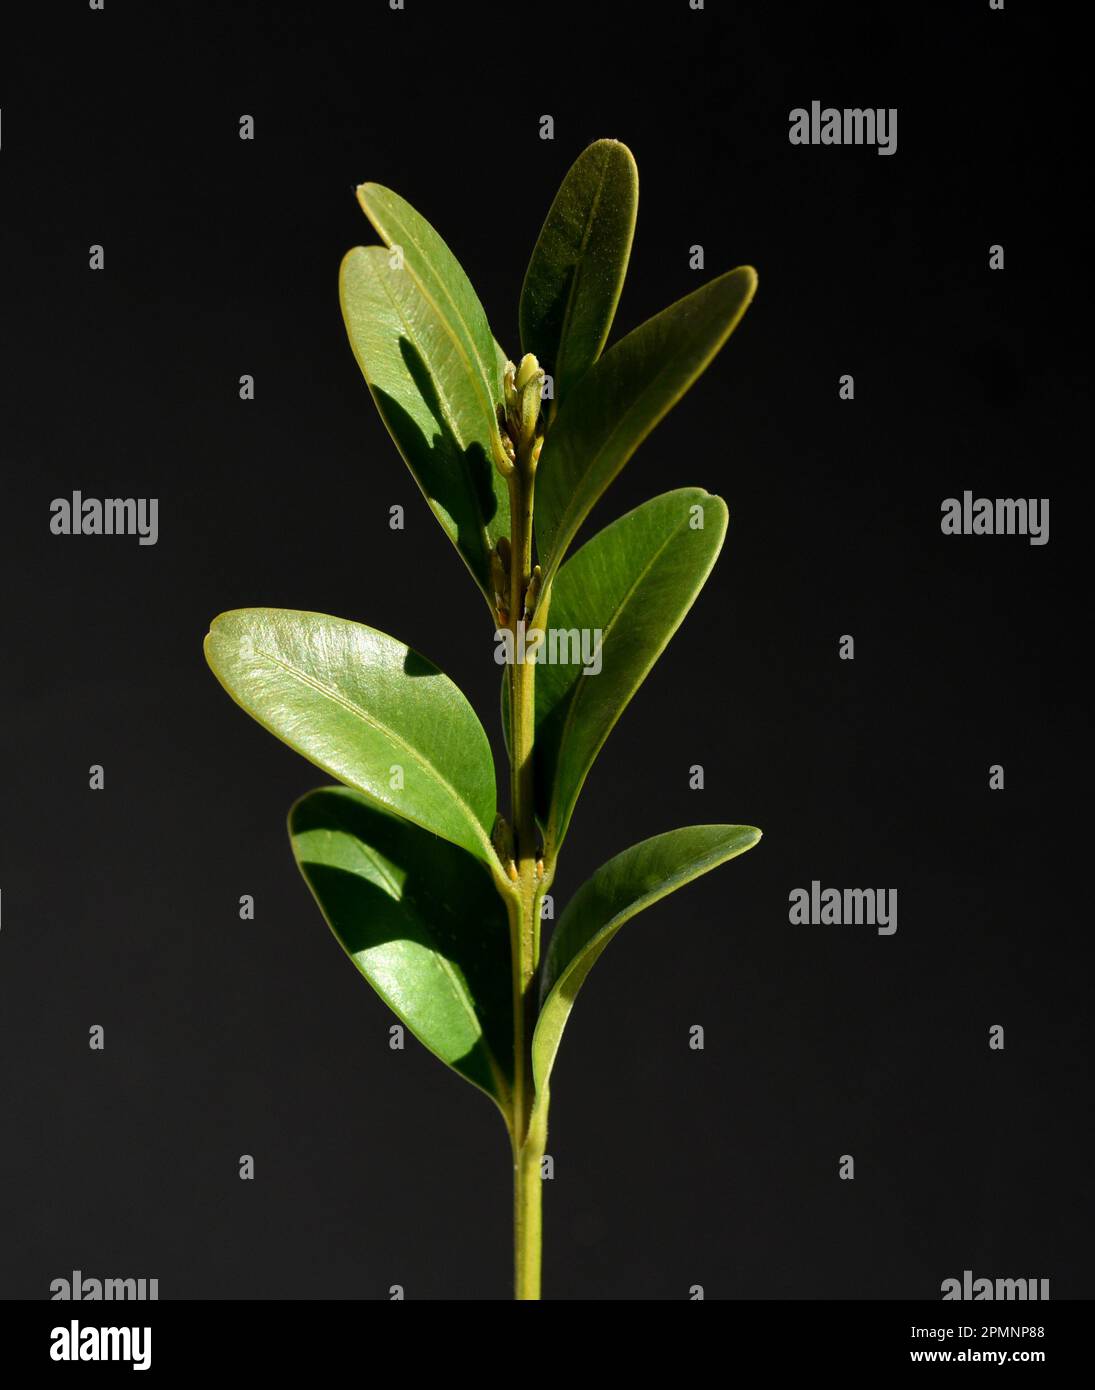 Buchsbaum, Buxus sempervirens ist ein immergruener Busch und gilt auch als gute Heilpflanze. Boxwood, Buxus sempervirens is an evergreen bush and is a Stock Photo